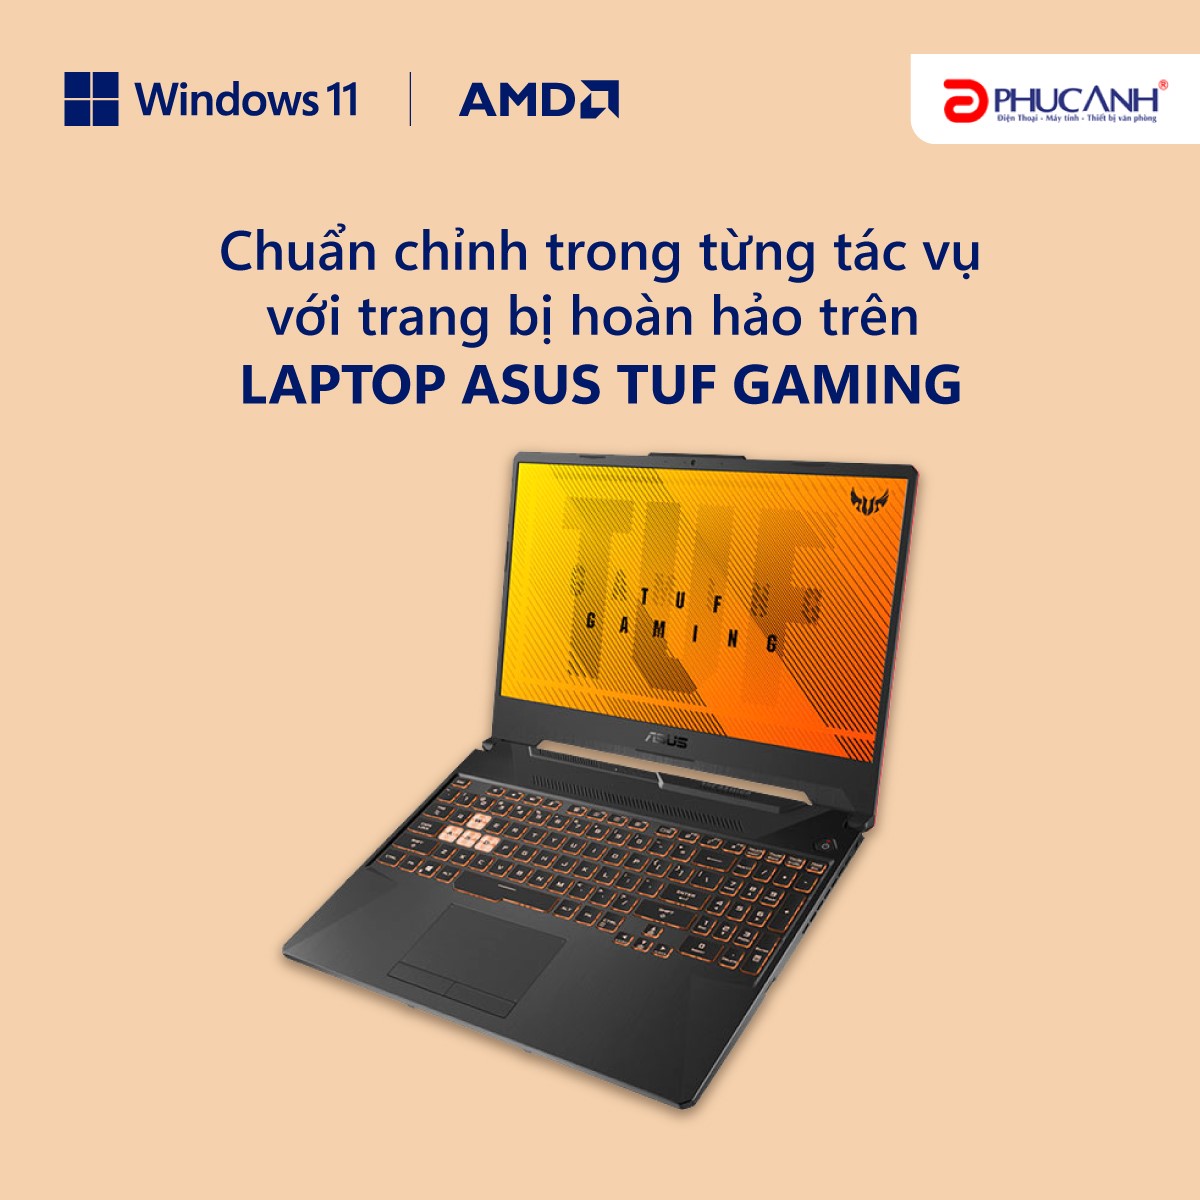 Chuẩn chỉnh trong từng tác vụ với trang bị hoàn hảo trên Laptop Asus TUF Gaming